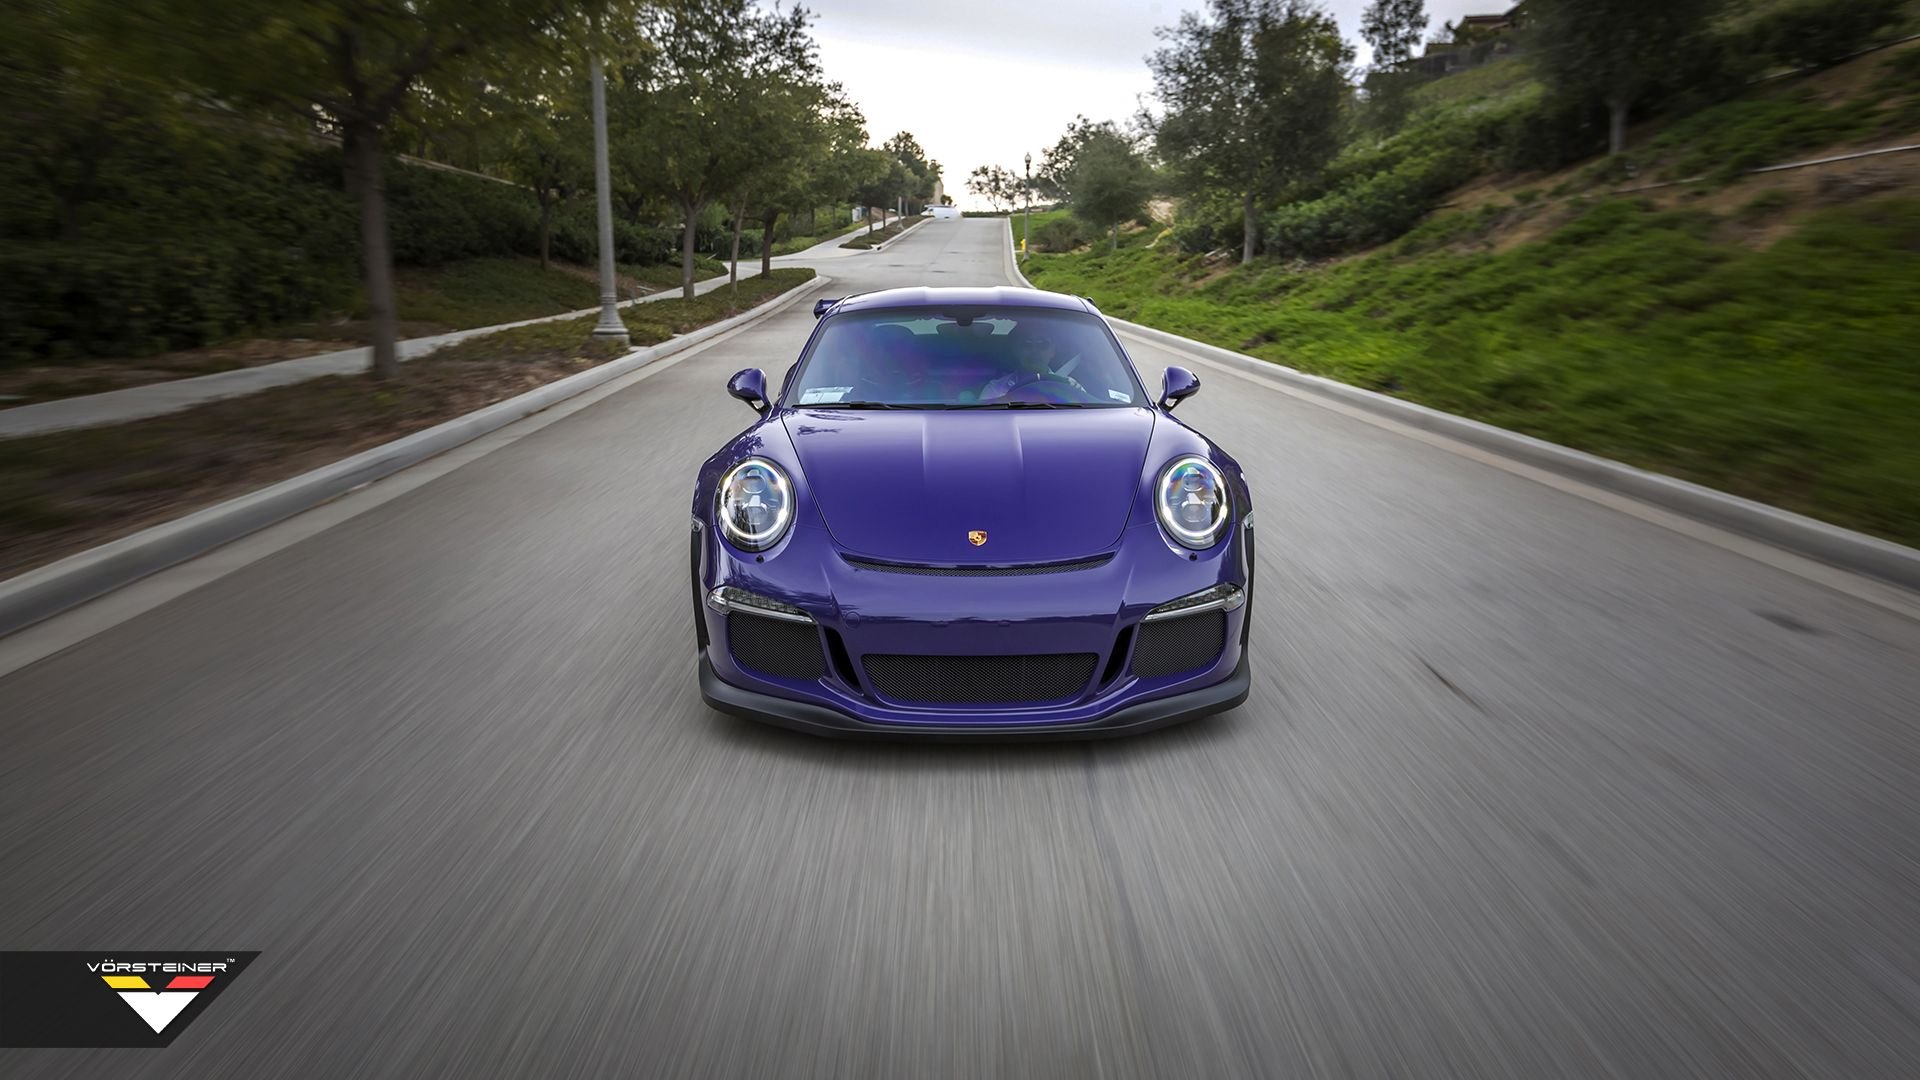 Aftermarket Halo Headlights on Purple Porsche 911 - Photo by Vorstiner